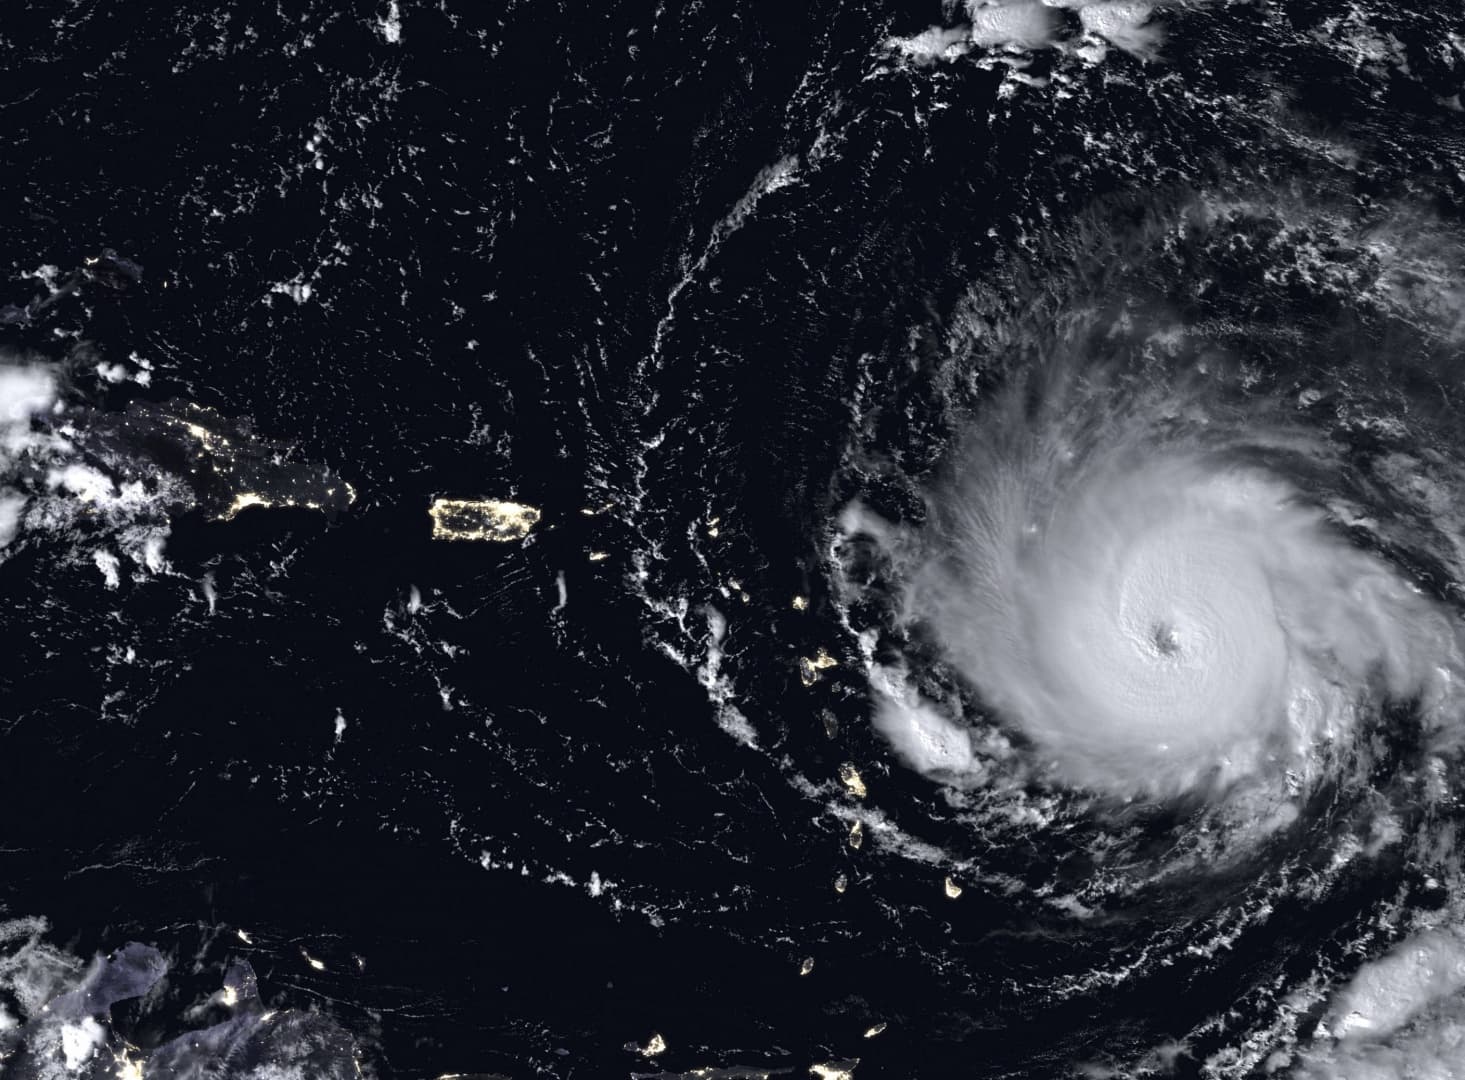 Irma izmosabb, mint Harvey volt - még nagyobb veszélyben Amerika